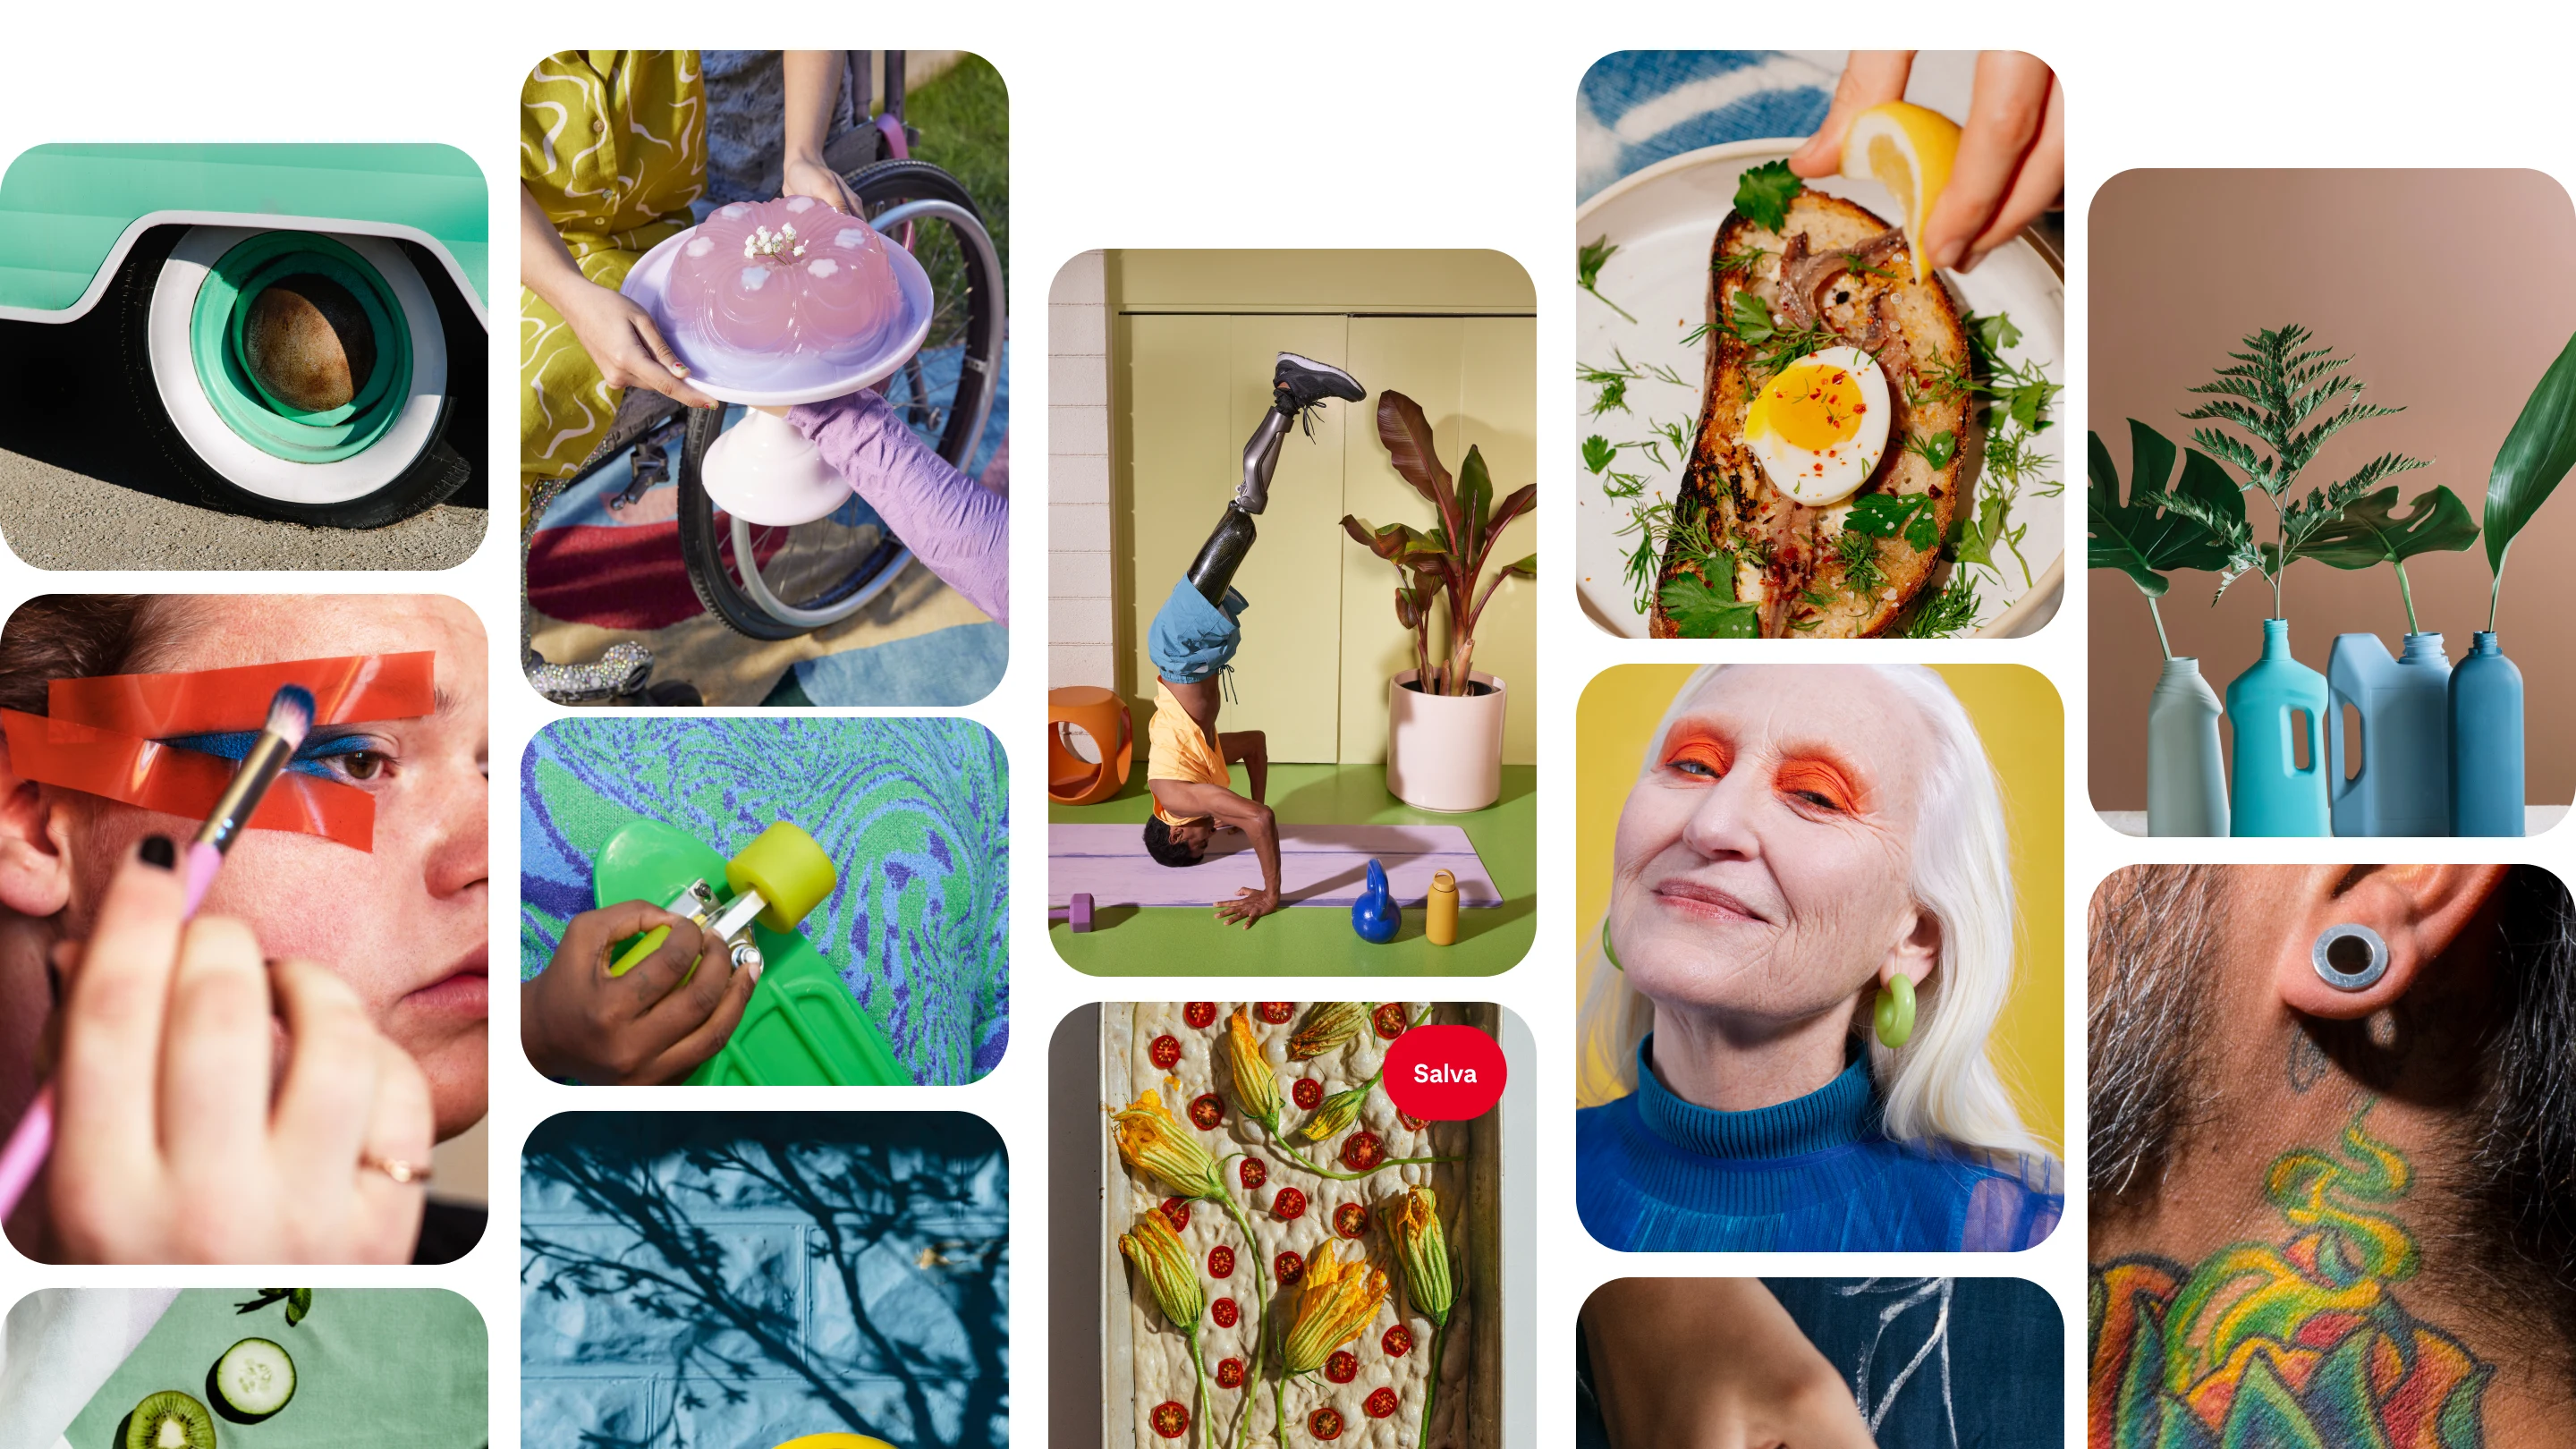 Un collage di Pin su Pinterest con immagini di trucchi colorati, pose di yoga e idee per ricette.